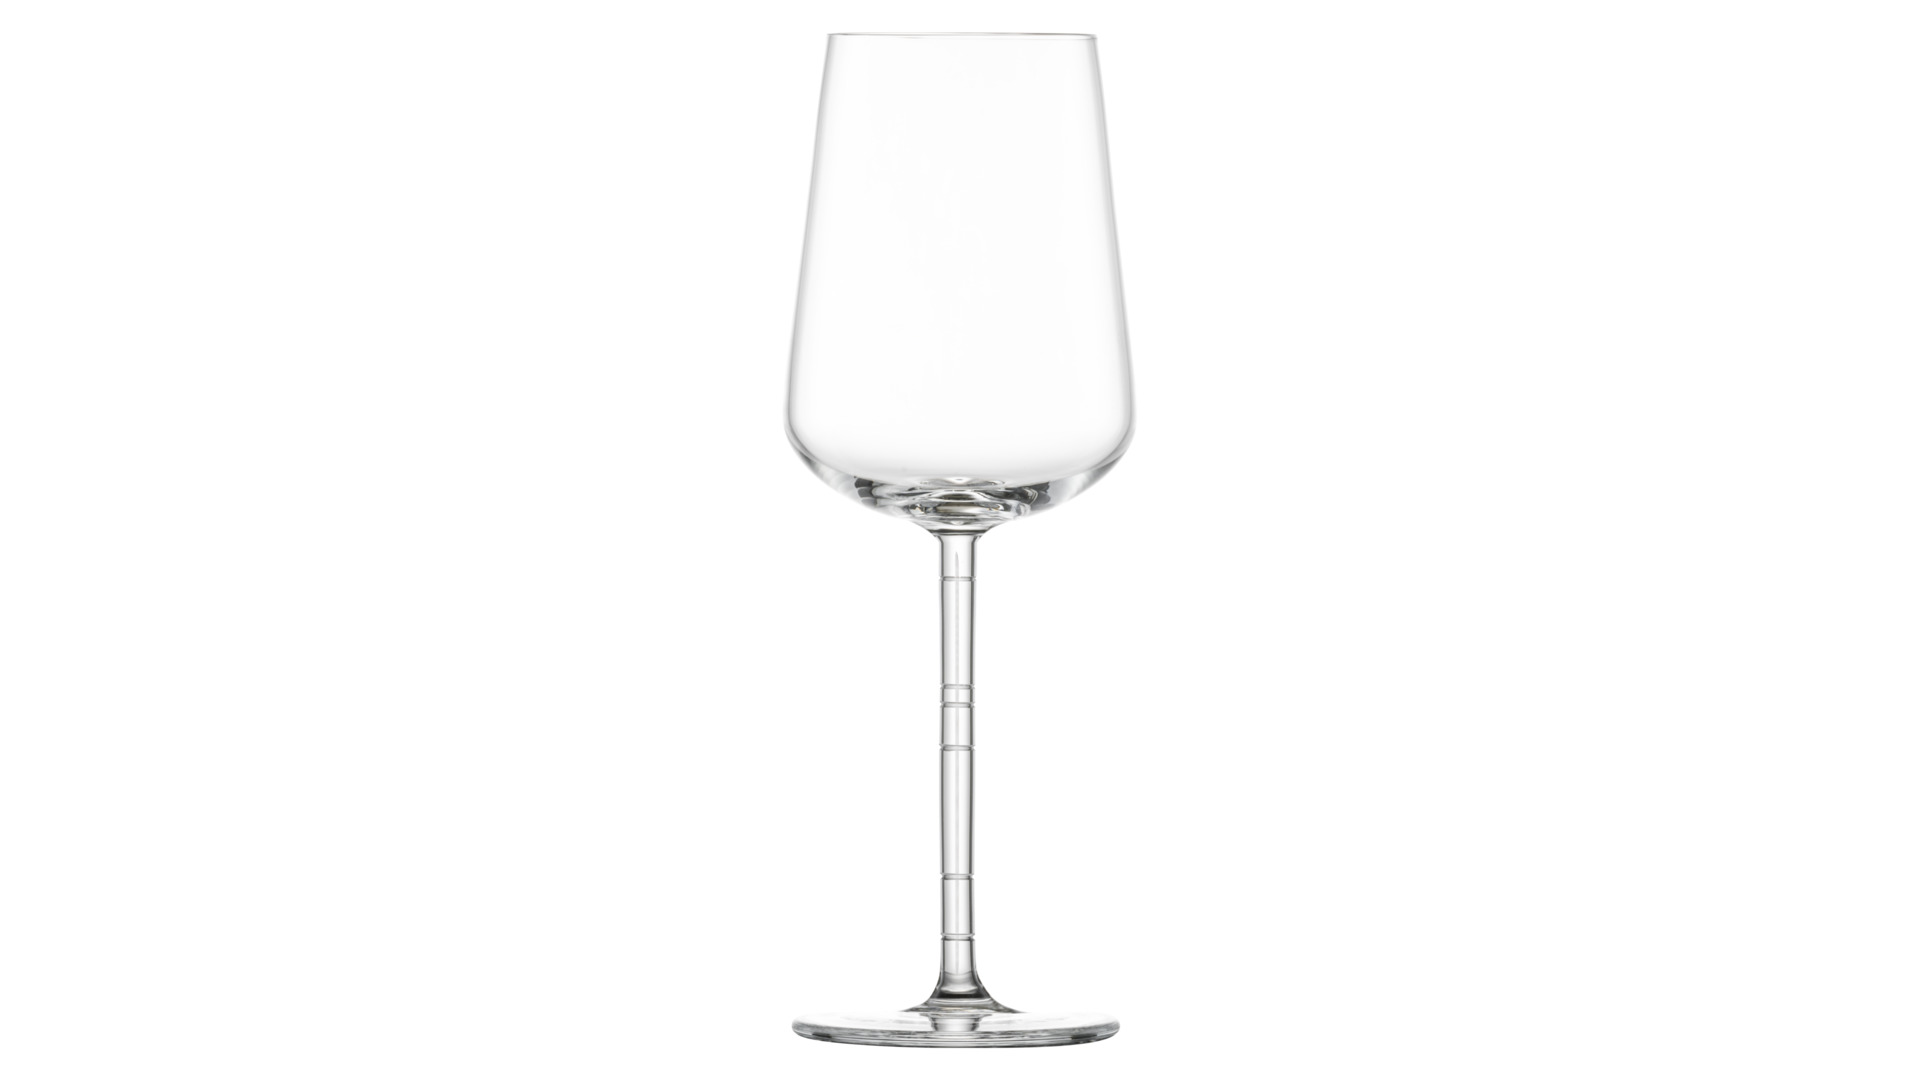 Набор бокалов для белого вина  Zwiesel Glas Journey 446 мл, 2 шт, стекло